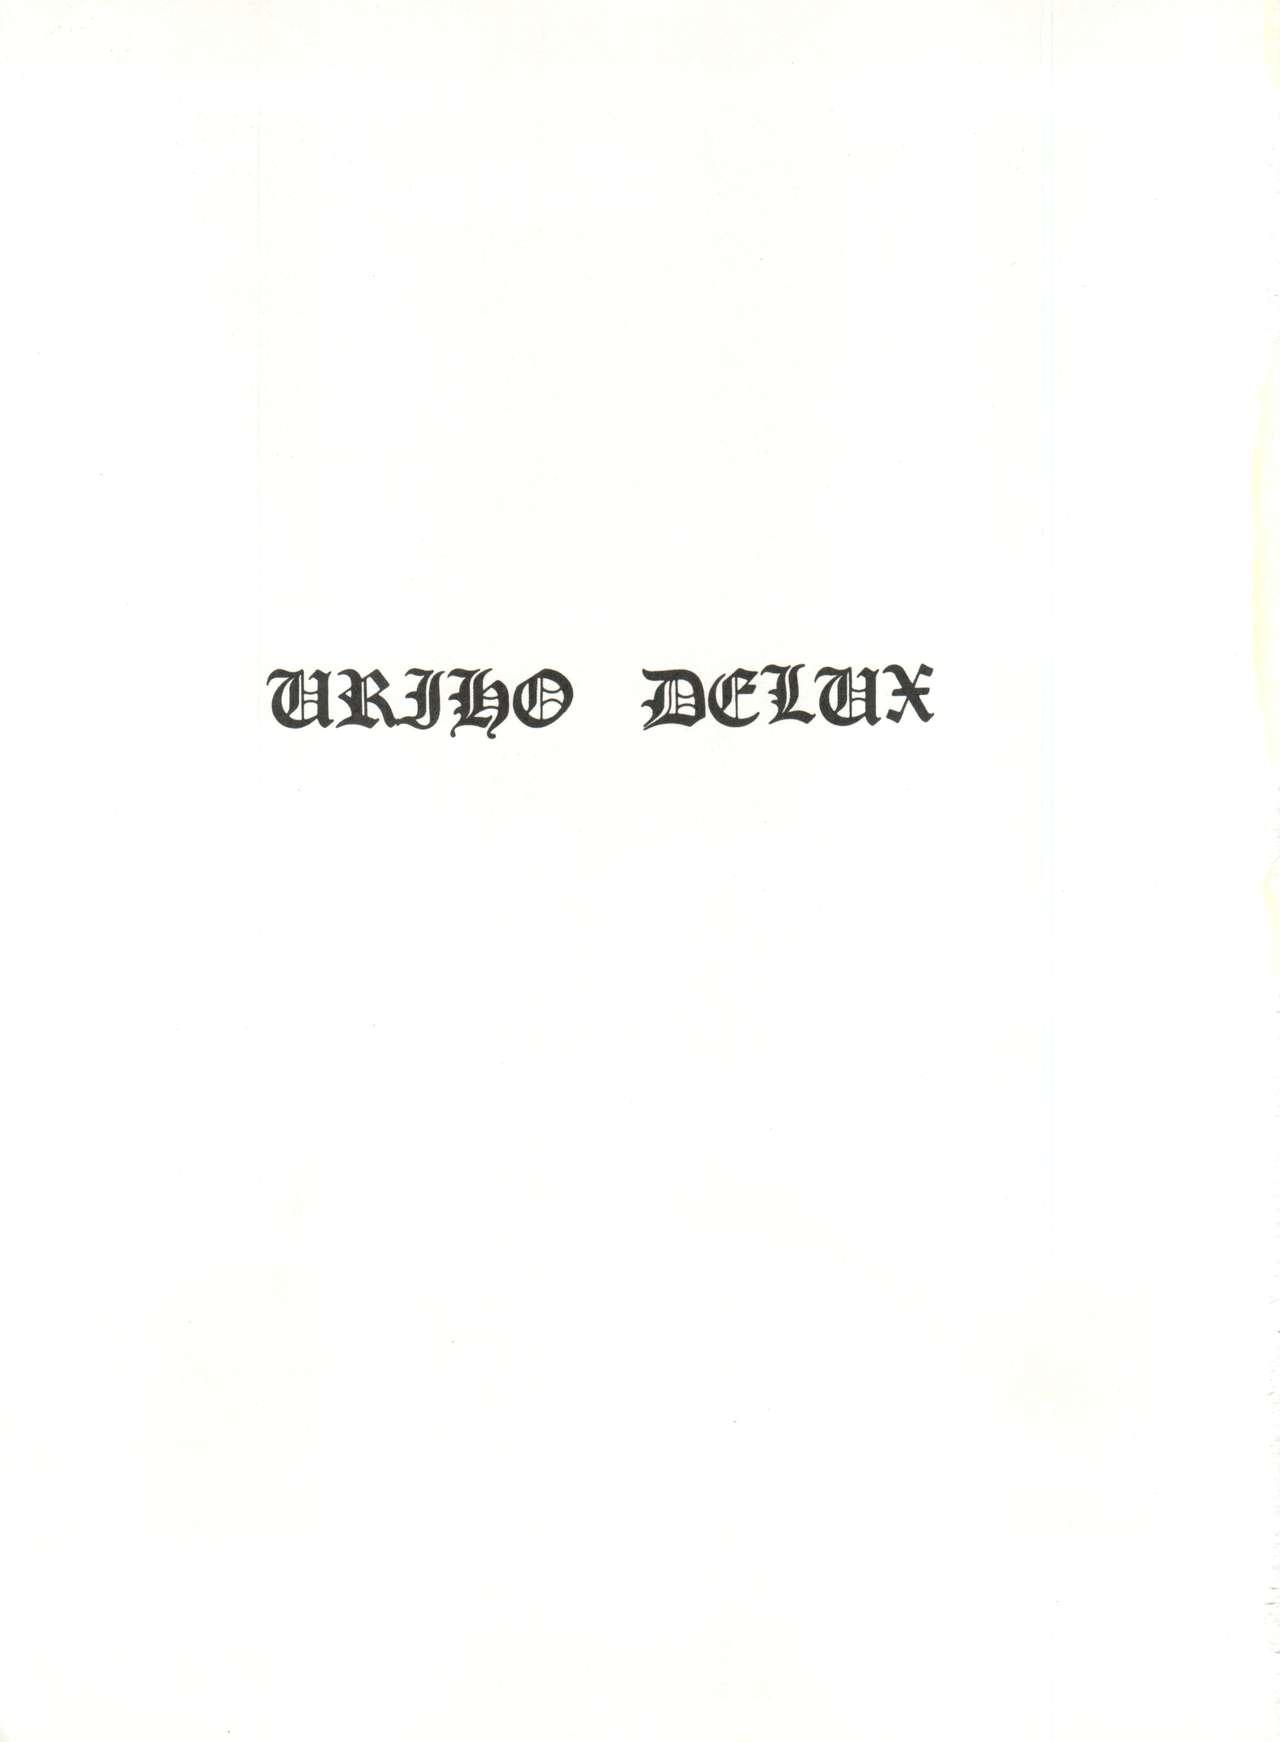 URIHO DELUX 1